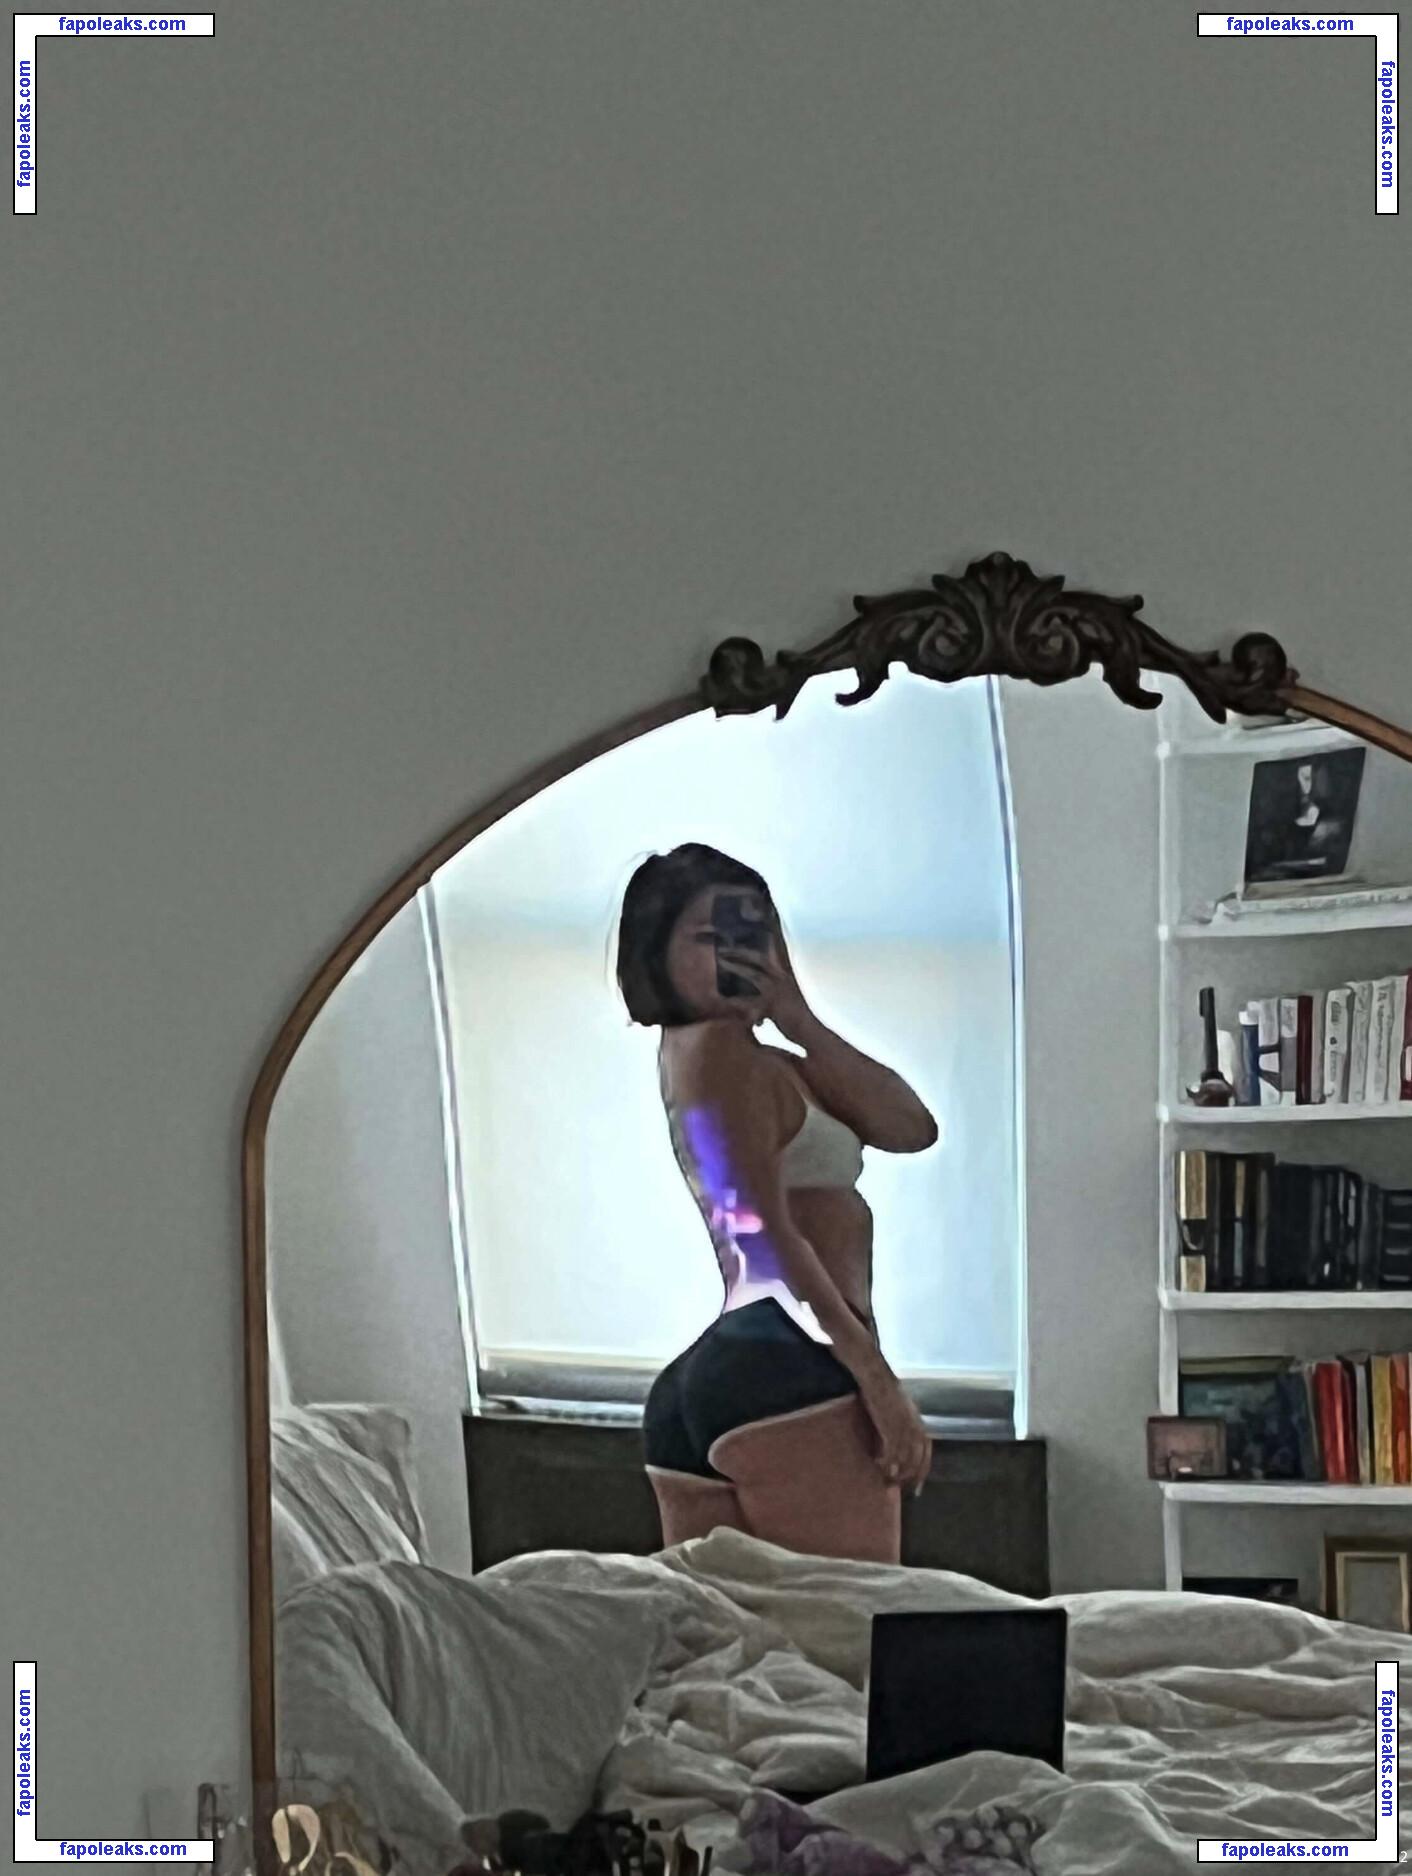 Julia Kelly / missjuliakelly nude photo #0367 from OnlyFans